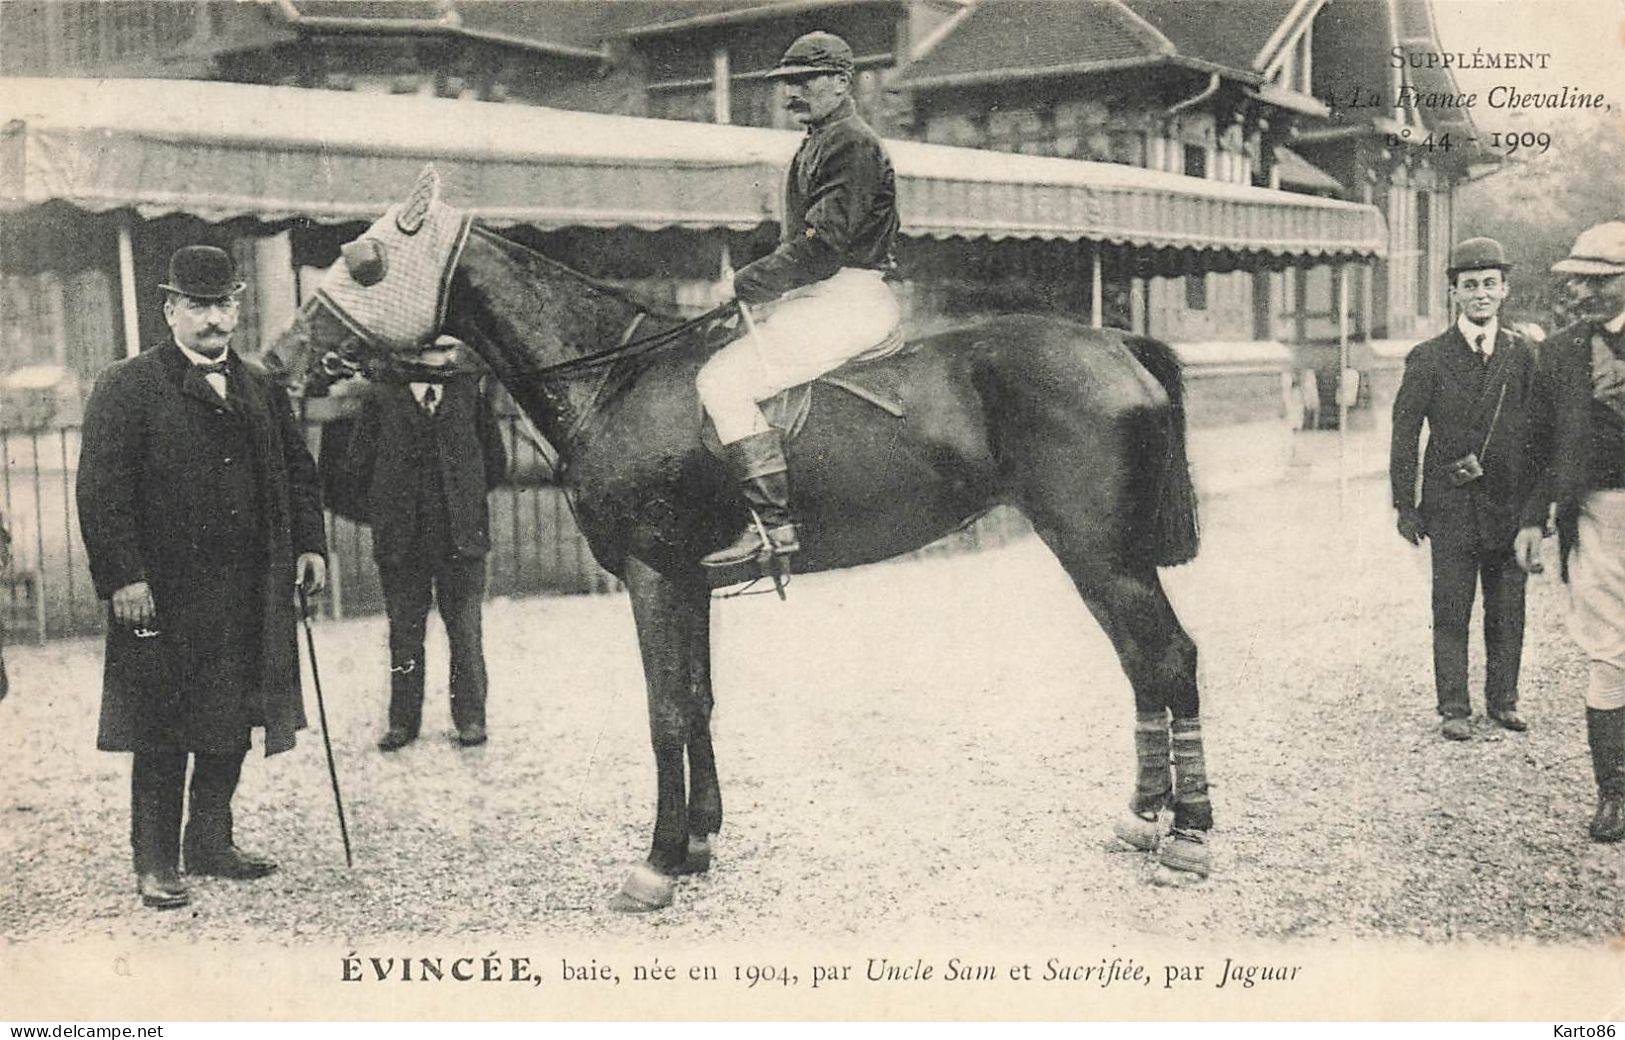 Hippisme * La France Chevaline N°44 1909 * Concours Centrale Hippique * Cheval EVINCEE Baie Jockey - Hípica